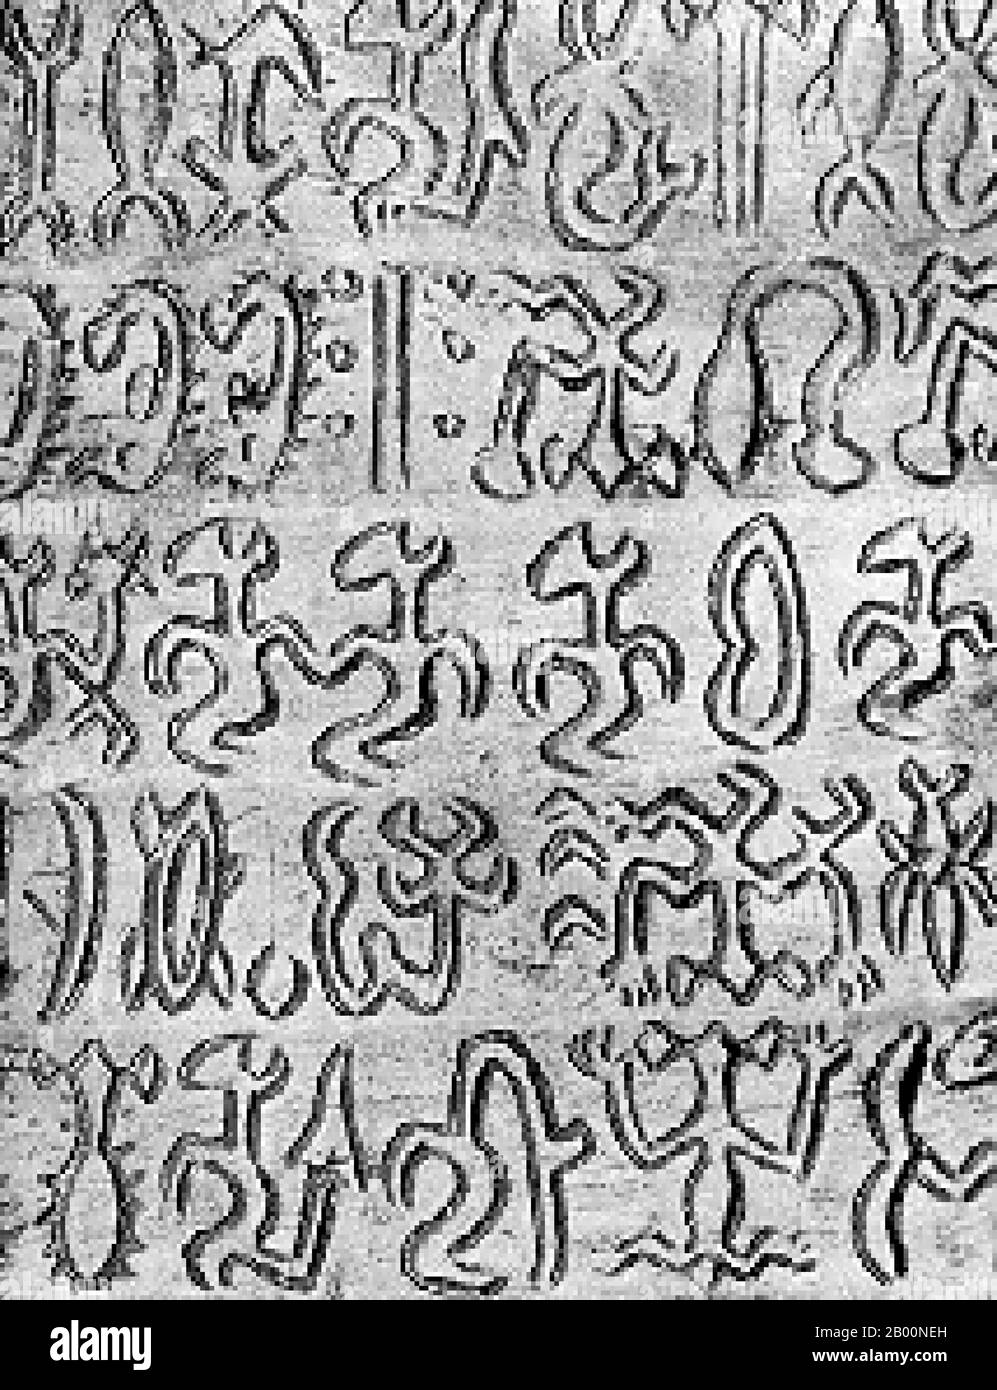 Chili: Le script de Rongorongo de l'île de Pâques, verso de la petite tablette de Santiago. Rongorongo est un système de glyphes découverts au XIXe siècle sur Rapa Nui / l'île de Pâques qui semble écrire ou proto-écrire. De nombreuses tentatives de déchiffrement ont été faites, aucune avec succès. Bien que certains calendrical et ce qui pourrait s'avérer être l'information généalogique a été identifié, même ces glyphes peuvent être lus. Si rongorongo s'avère être l'écriture et s'avère être une invention indépendante, ce serait l'une des très rares inventions indépendantes de l'écriture dans l'histoire humaine. Banque D'Images